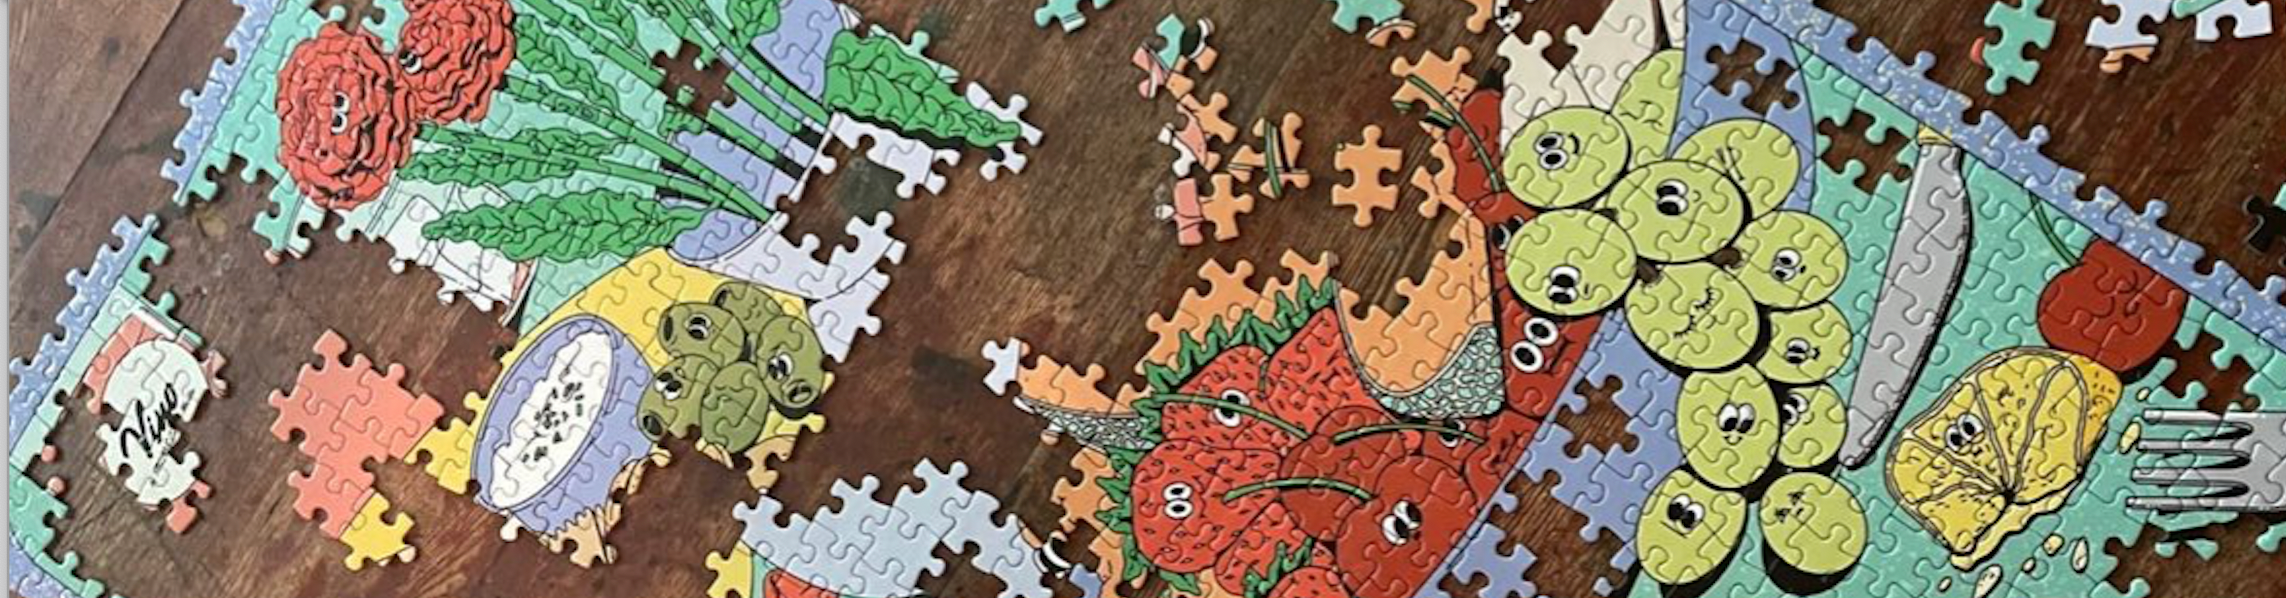 Puzzle d'encadrement 1000 pièces. De quelle taille de cadre de puzzle  avez-vous besoin ?